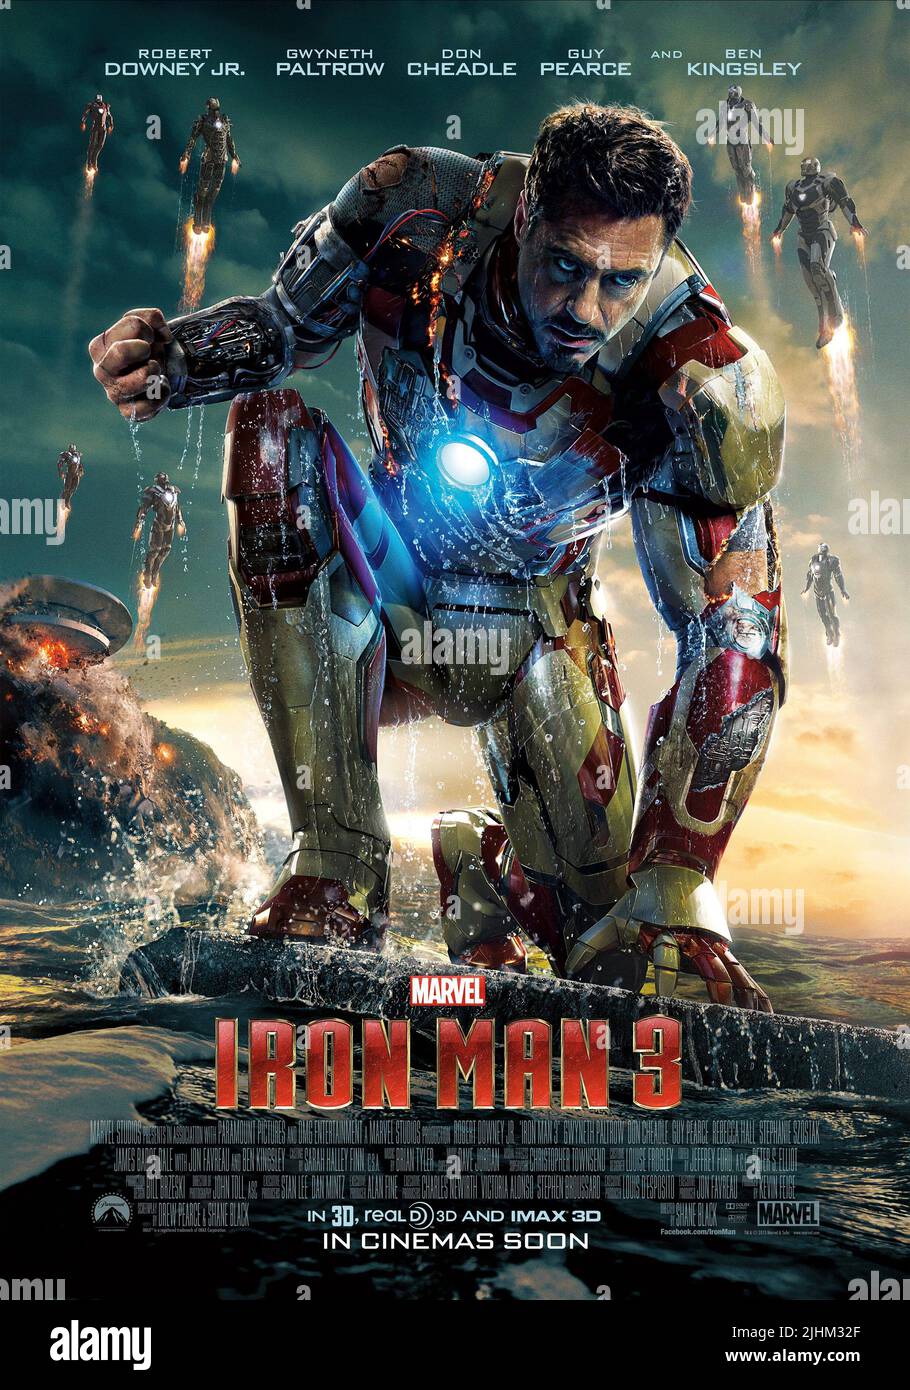 Avengers: Infinity War' - Robert Downey Jr. Shares All Iron Man Poster